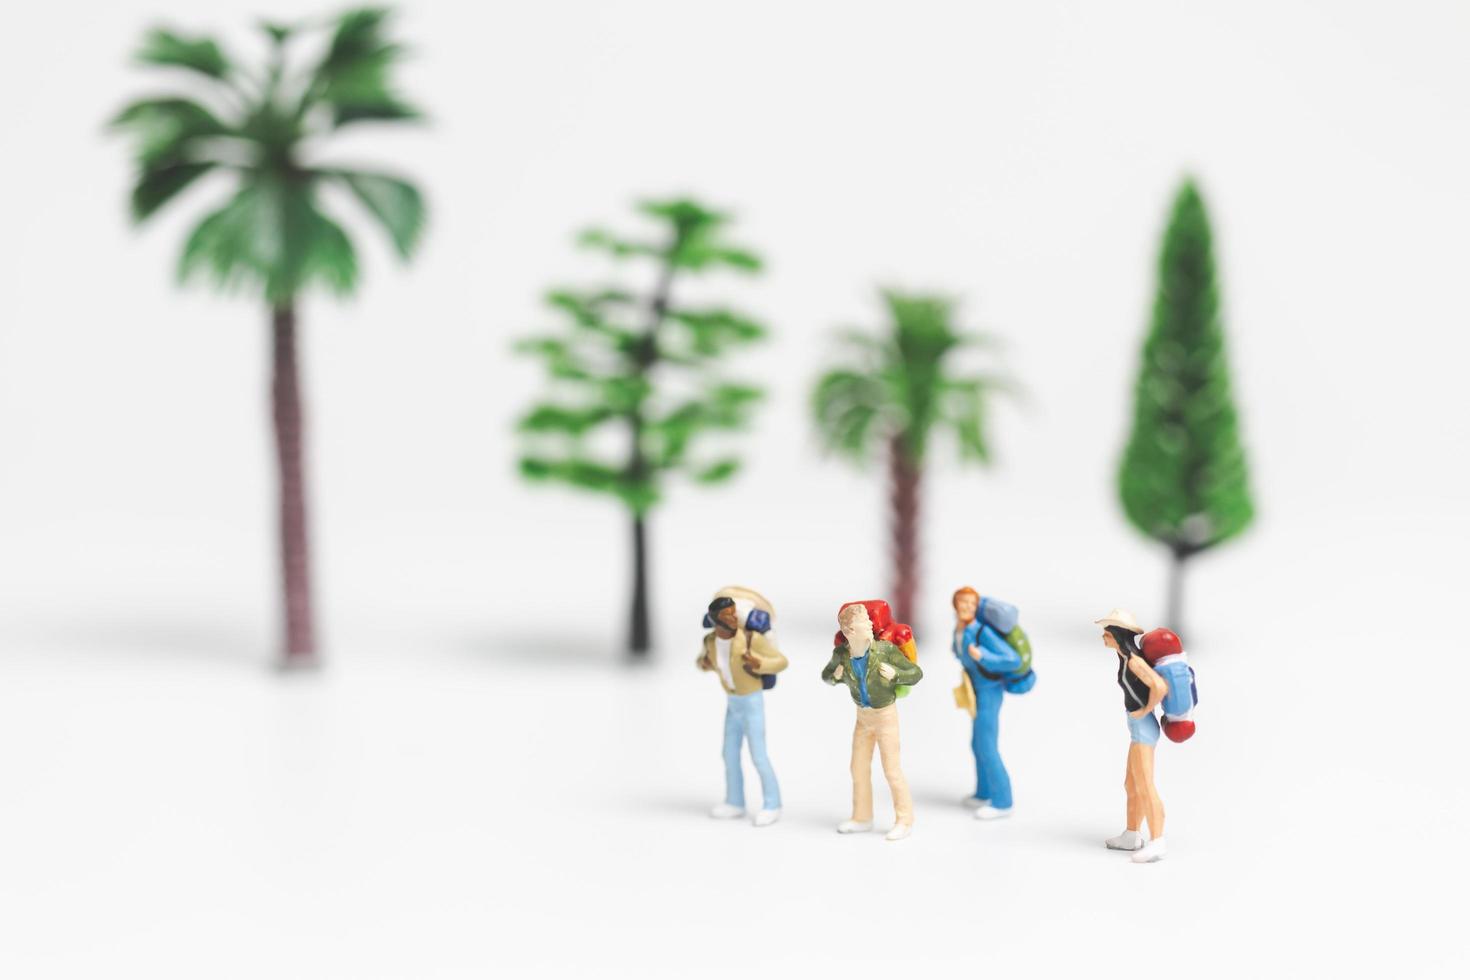 Viajeros en miniatura con mochilas caminando sobre un fondo blanco, concepto de viaje y aventura foto